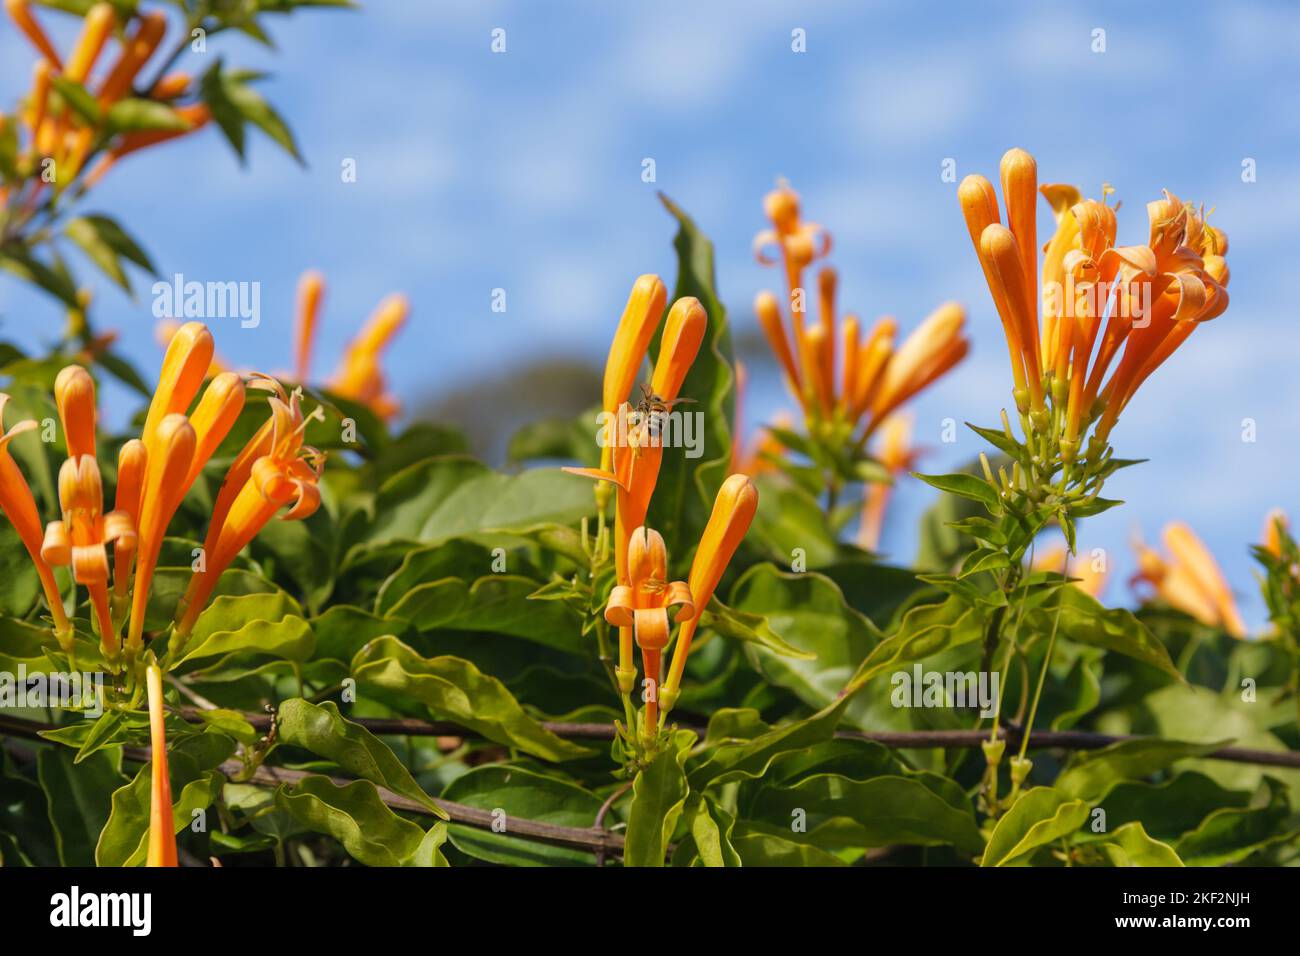 Pyrostegia venusta, auch bekannt als Flamevine- oder Orangentrompetenrebe, ist eine Pflanzenart der Gattung Pyrostegia der Familie Bignoniaceae ori Stockfoto